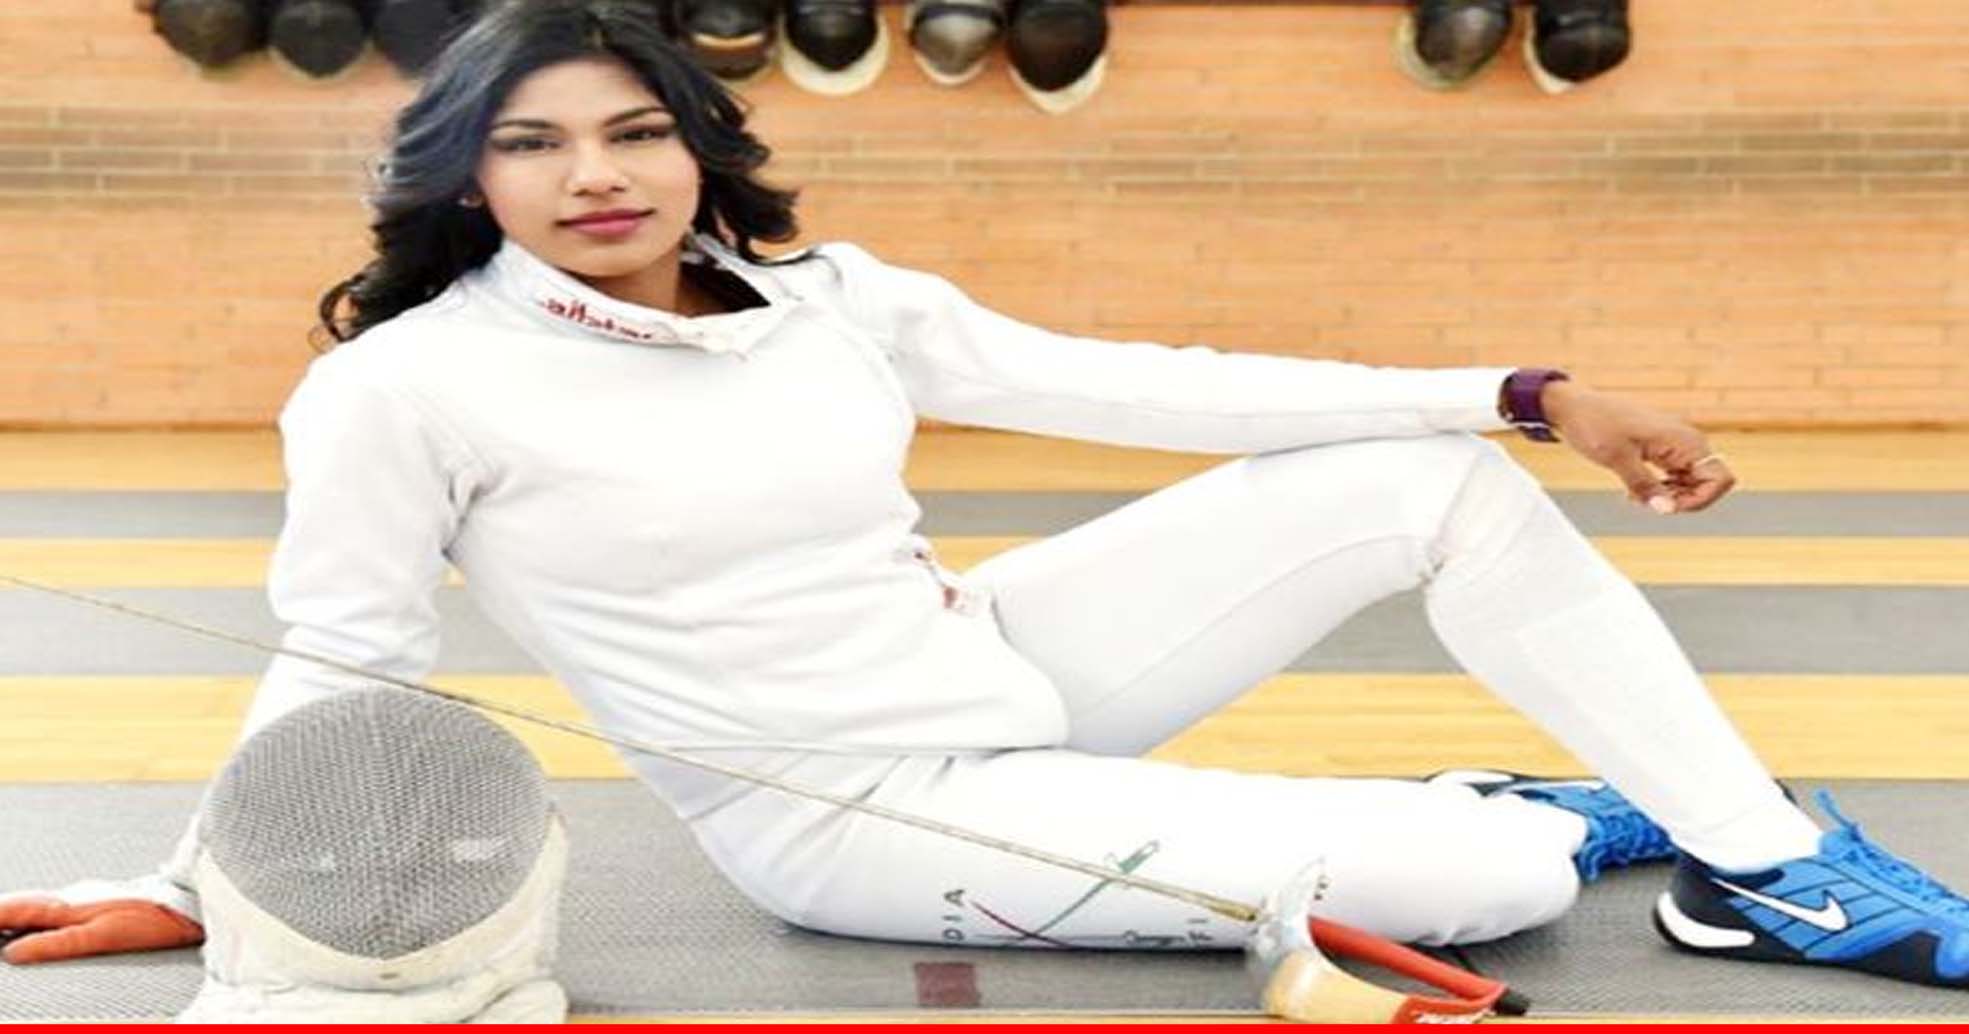 ओलंपिक का टिकट हासिल करने वाली पहली भारतीय तलवारबाज बनीं भवानी देवी